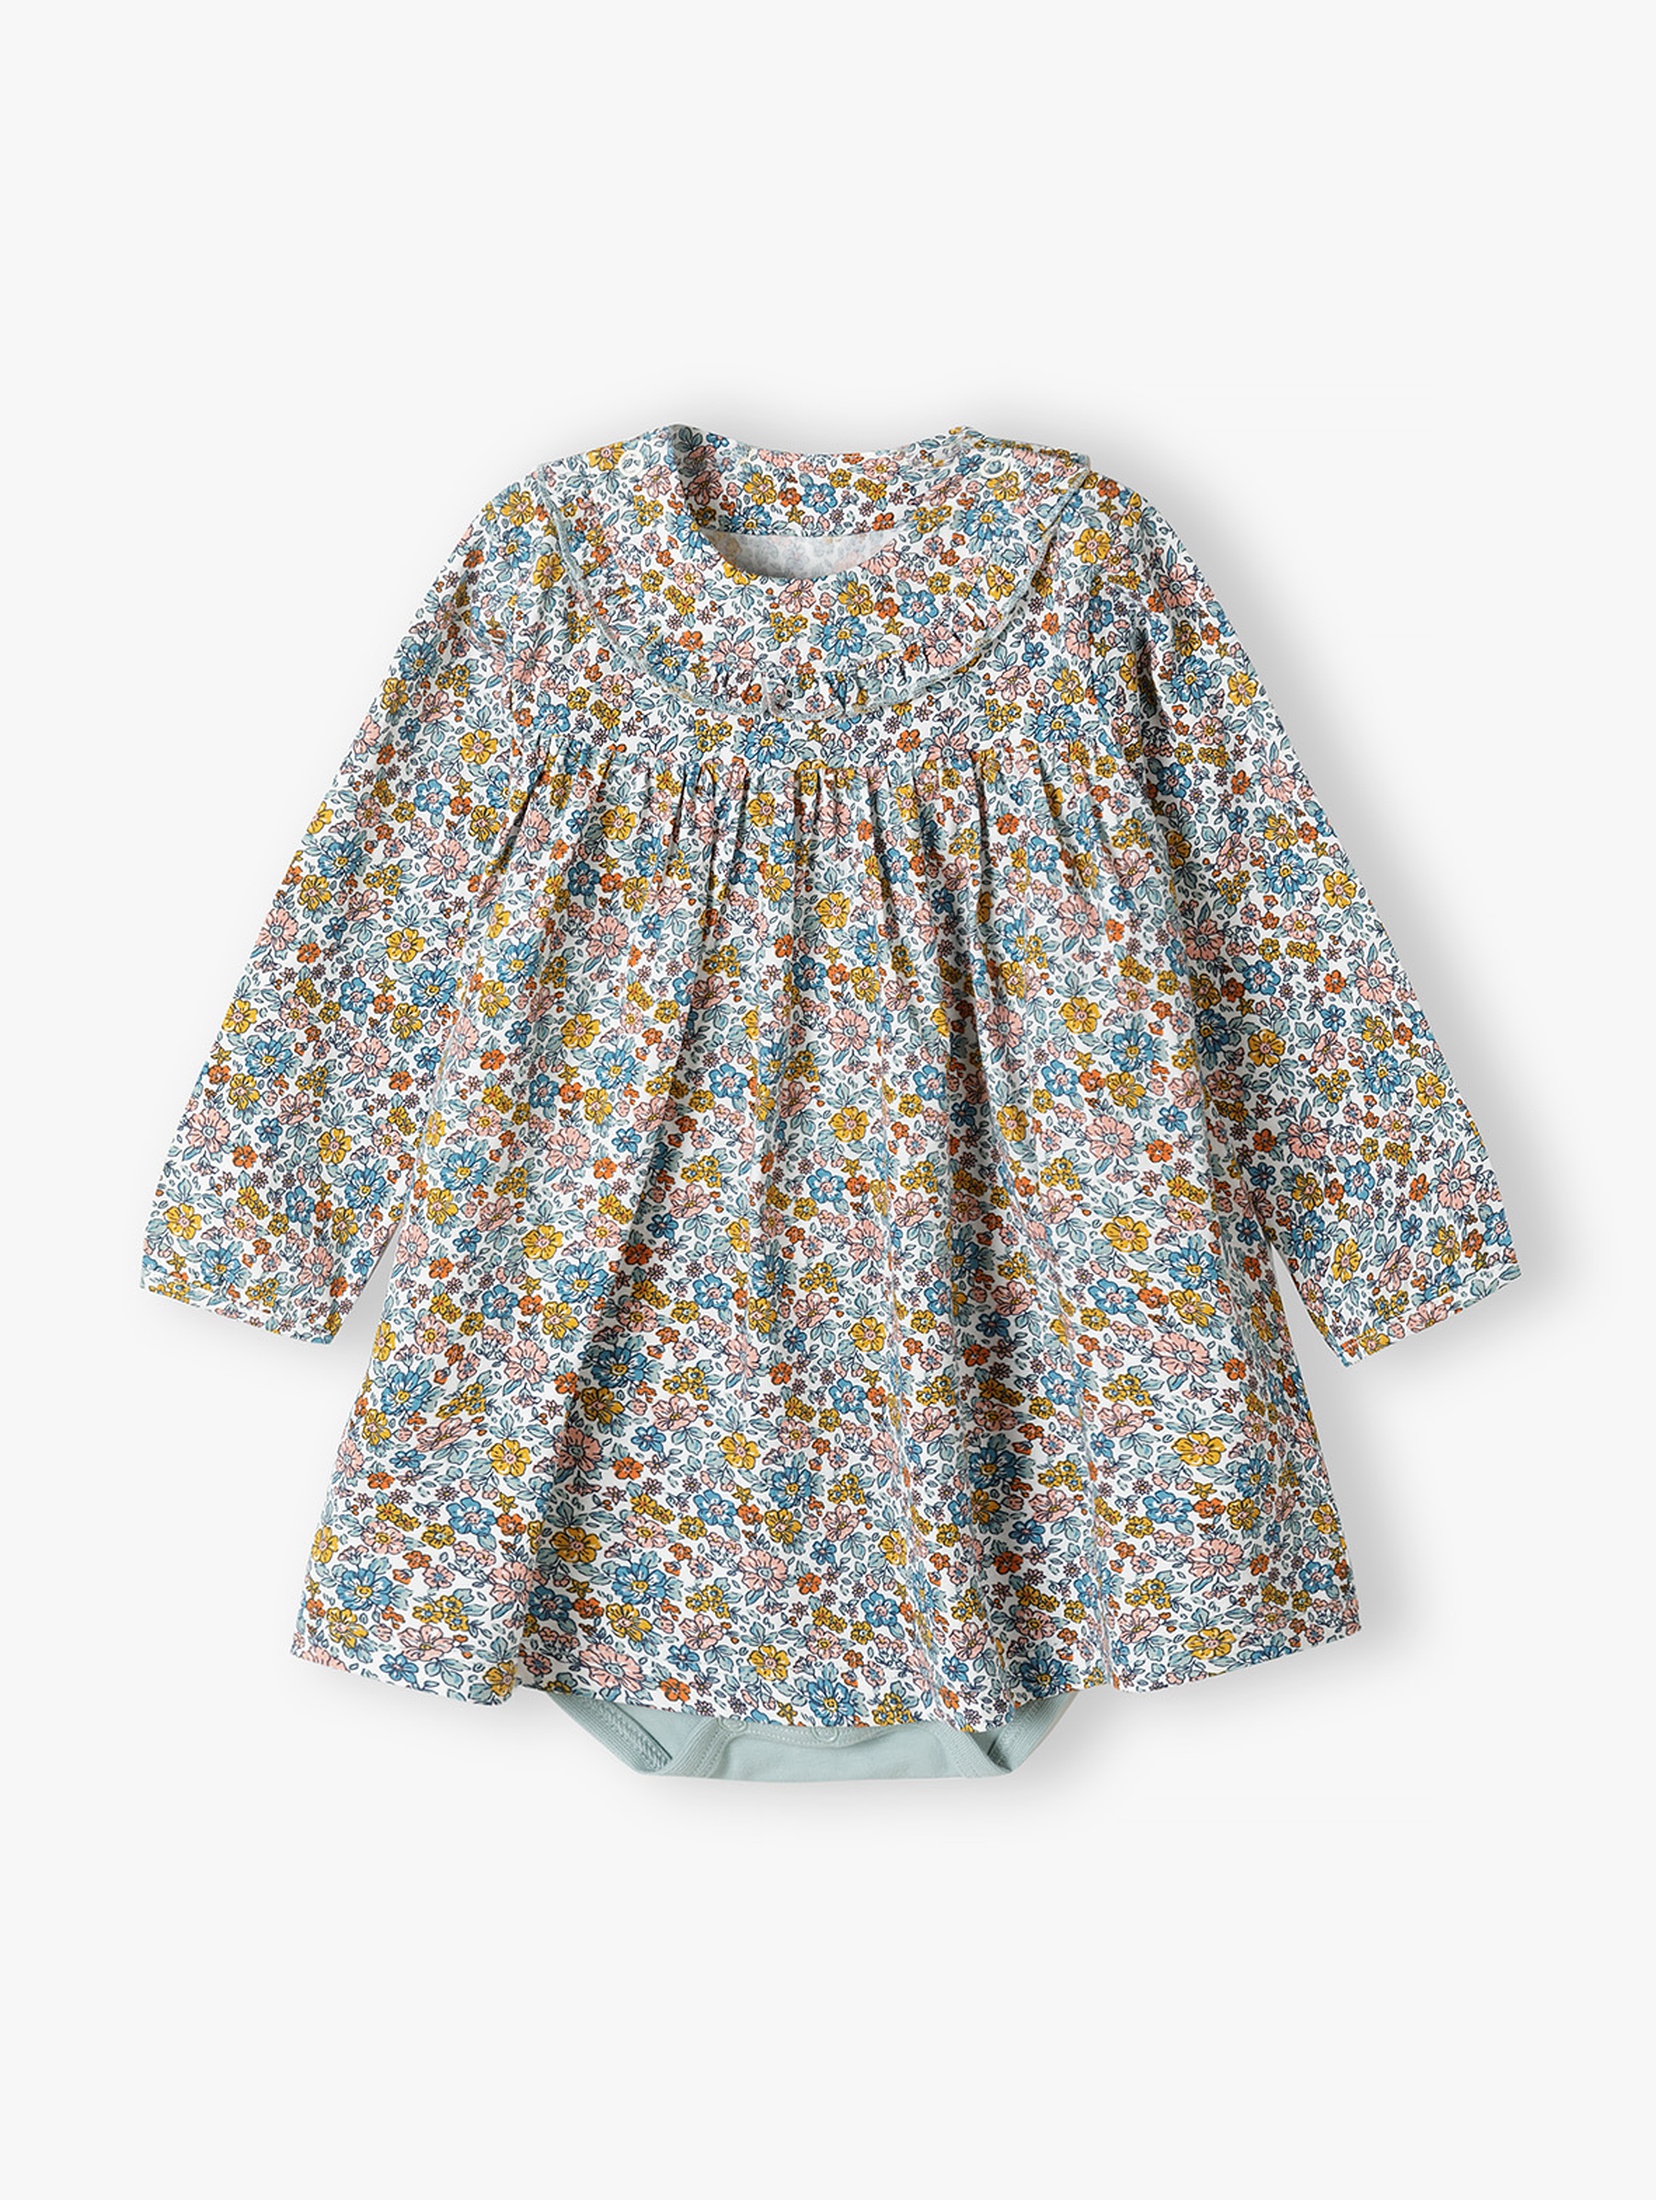 Bawełniane sukienko-body niemowlęce w kwiaty